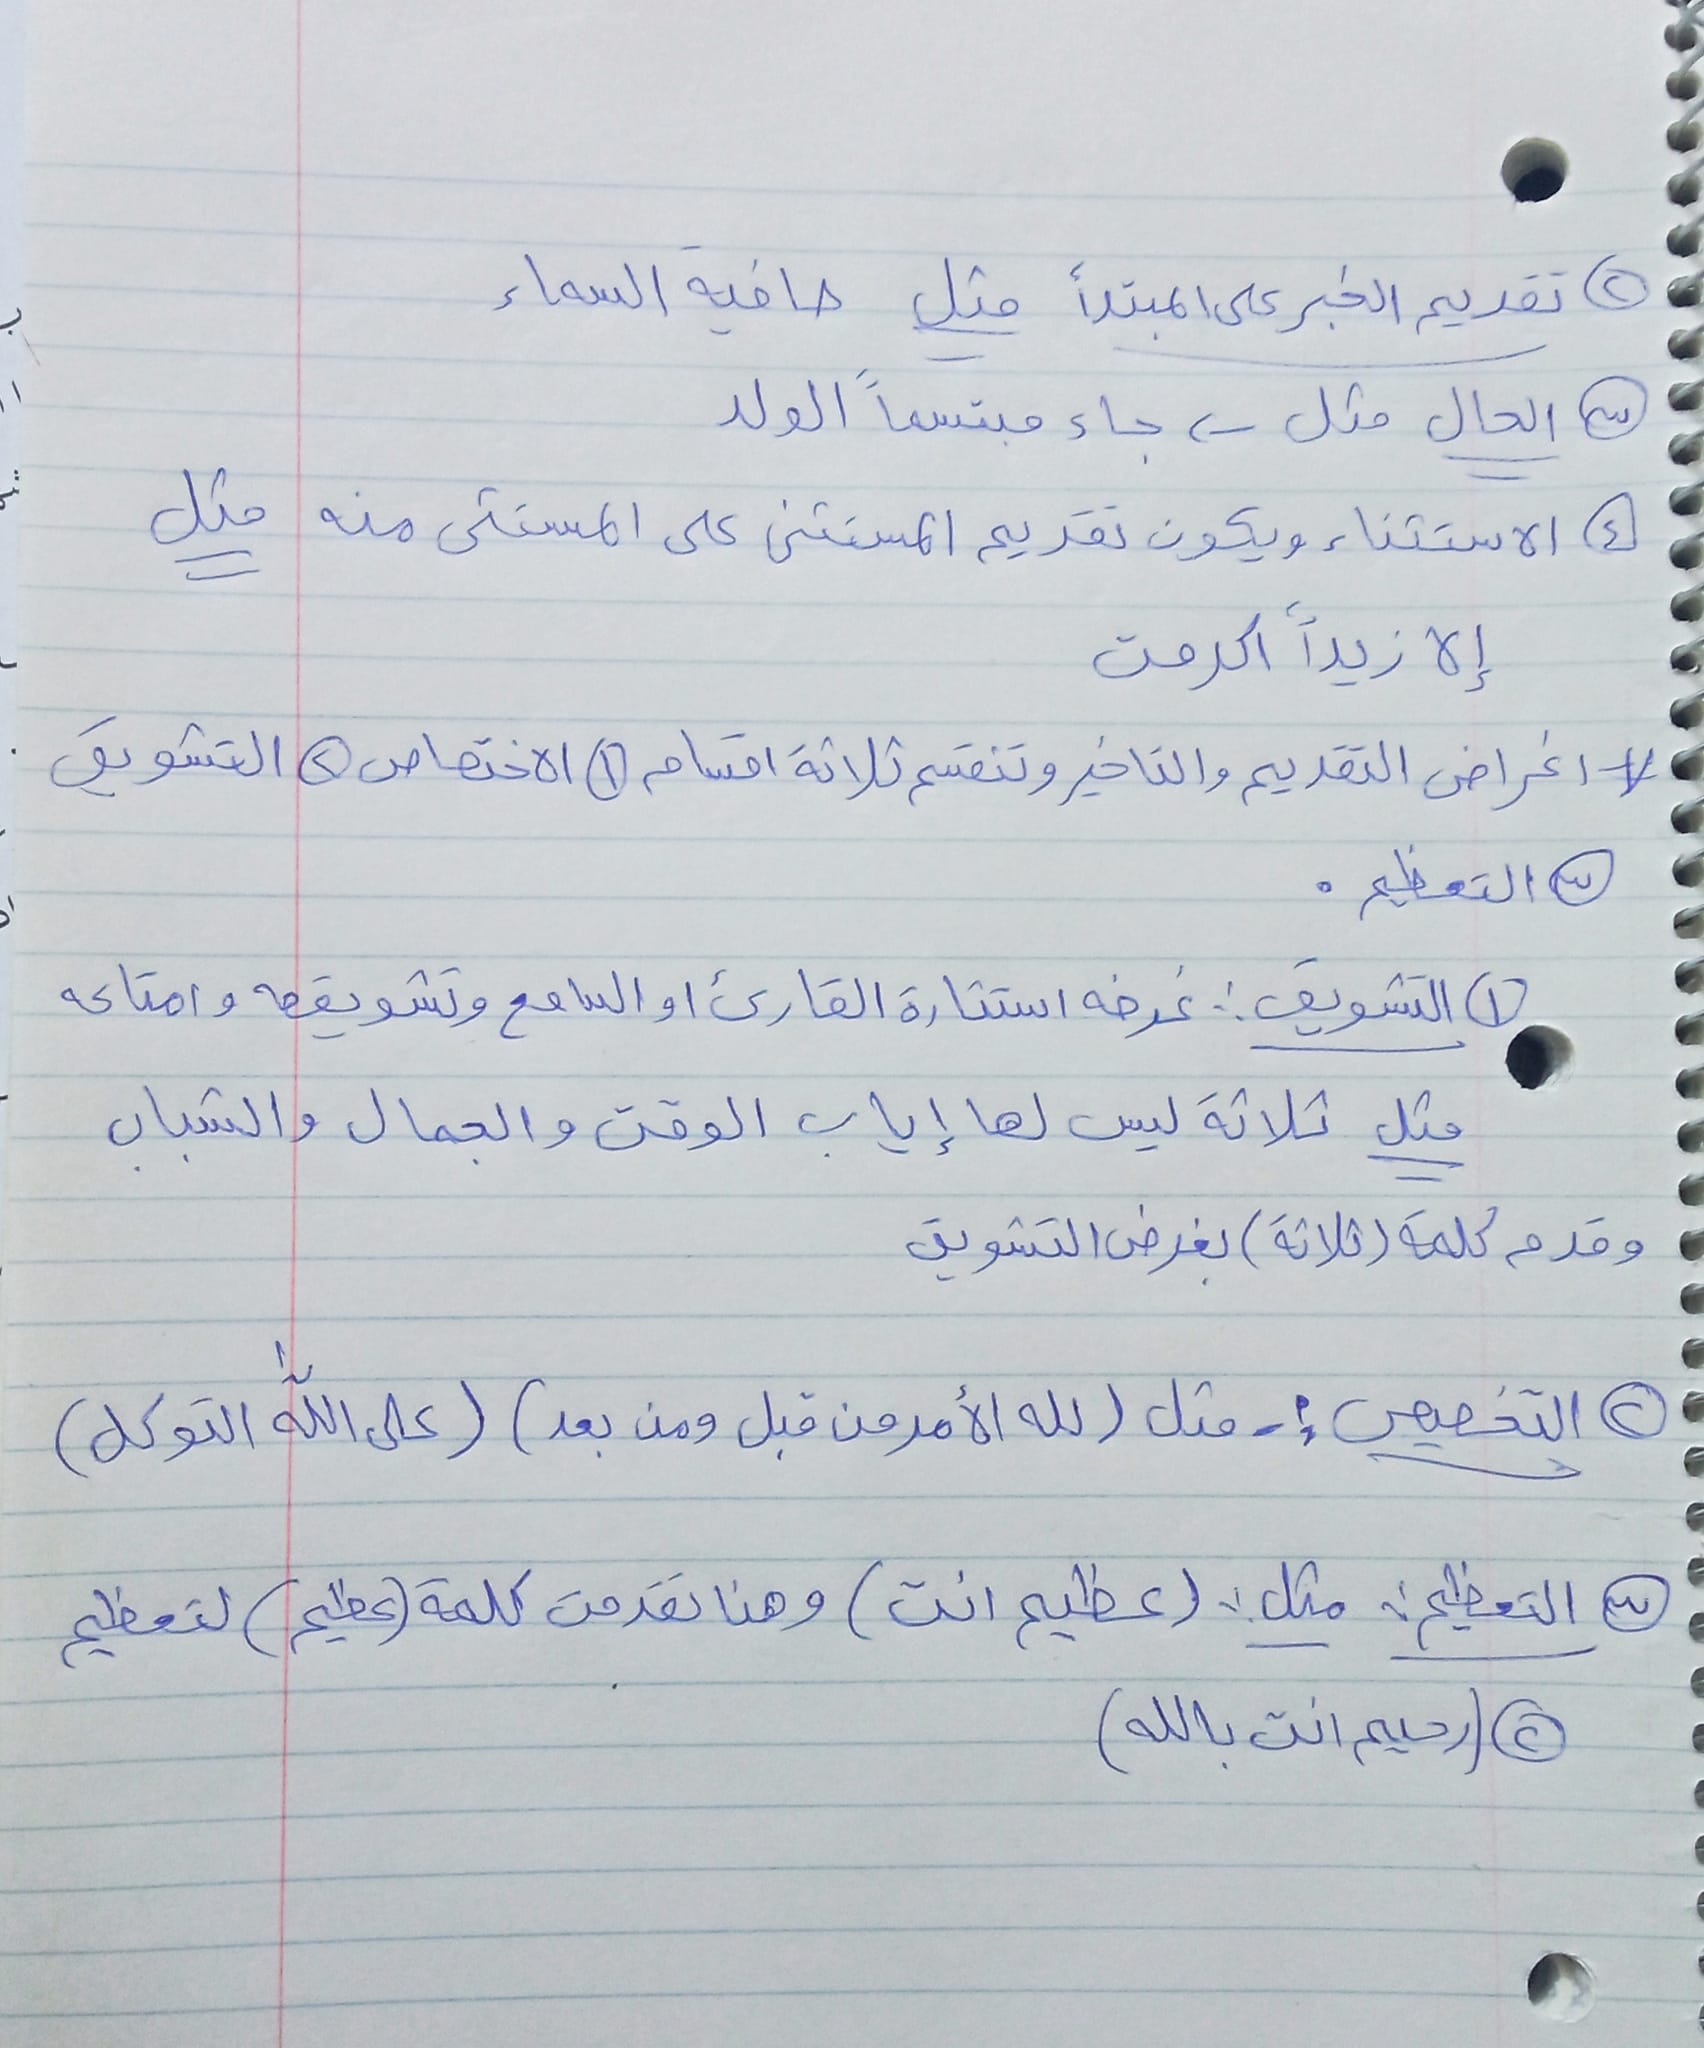 MzI5MTgzMC42MDc2 بالصور شرح قاعدة التقديم و التاخير واجابات اسئلة الكتاب مادة اللغة العربية للصف العاشر الفصل الثاني